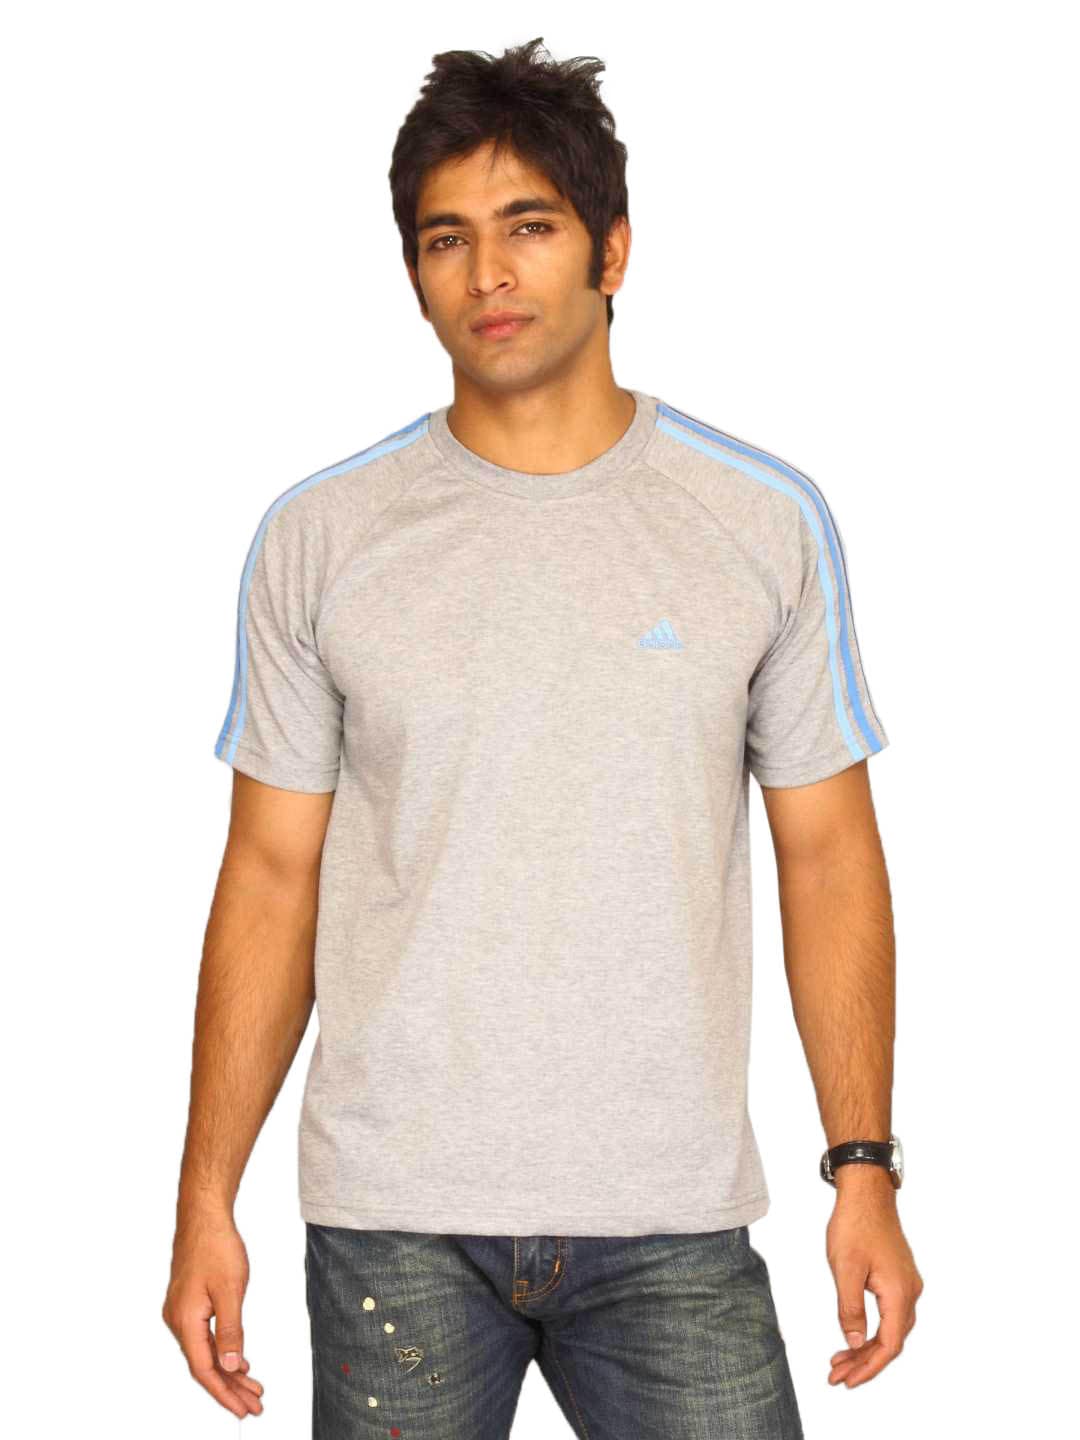 ADIDAS Men's Med Grey Blue T-shirt